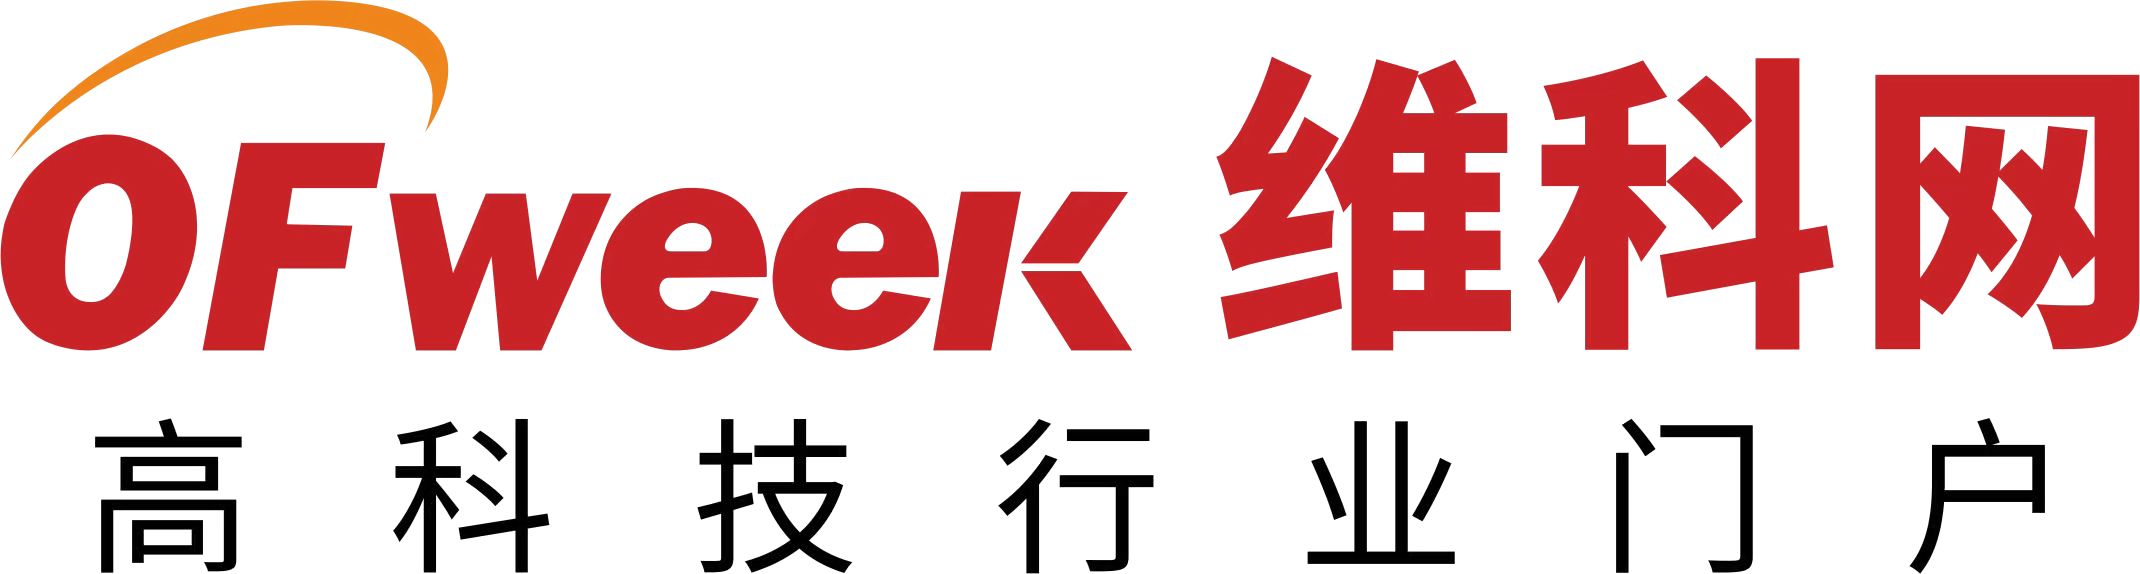 OFweek logo